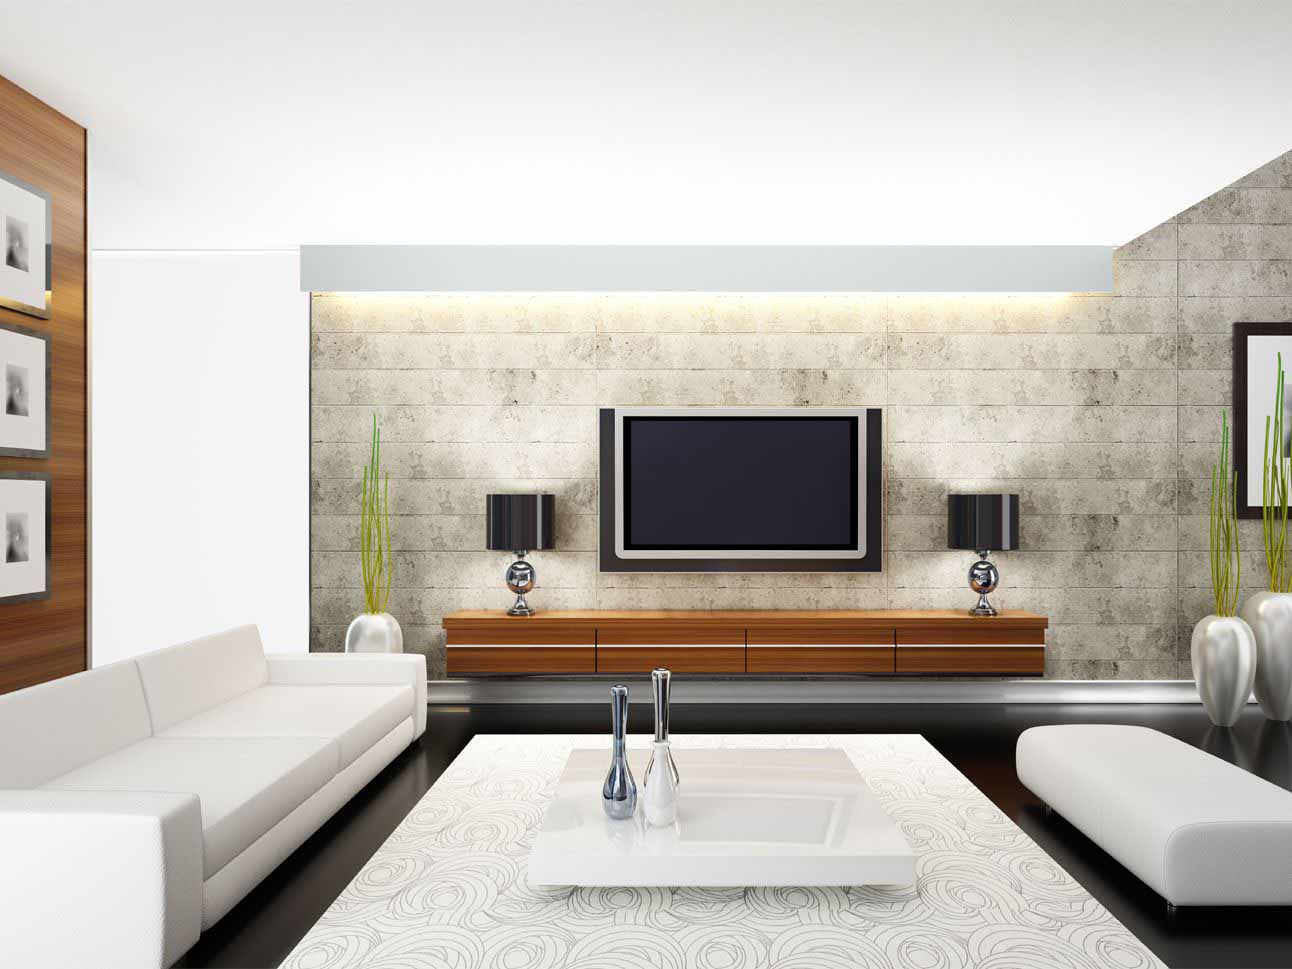 دکوراسیون دیوار پشت تلویزیون با آباژورهای رومیزی مشکی و فلزی